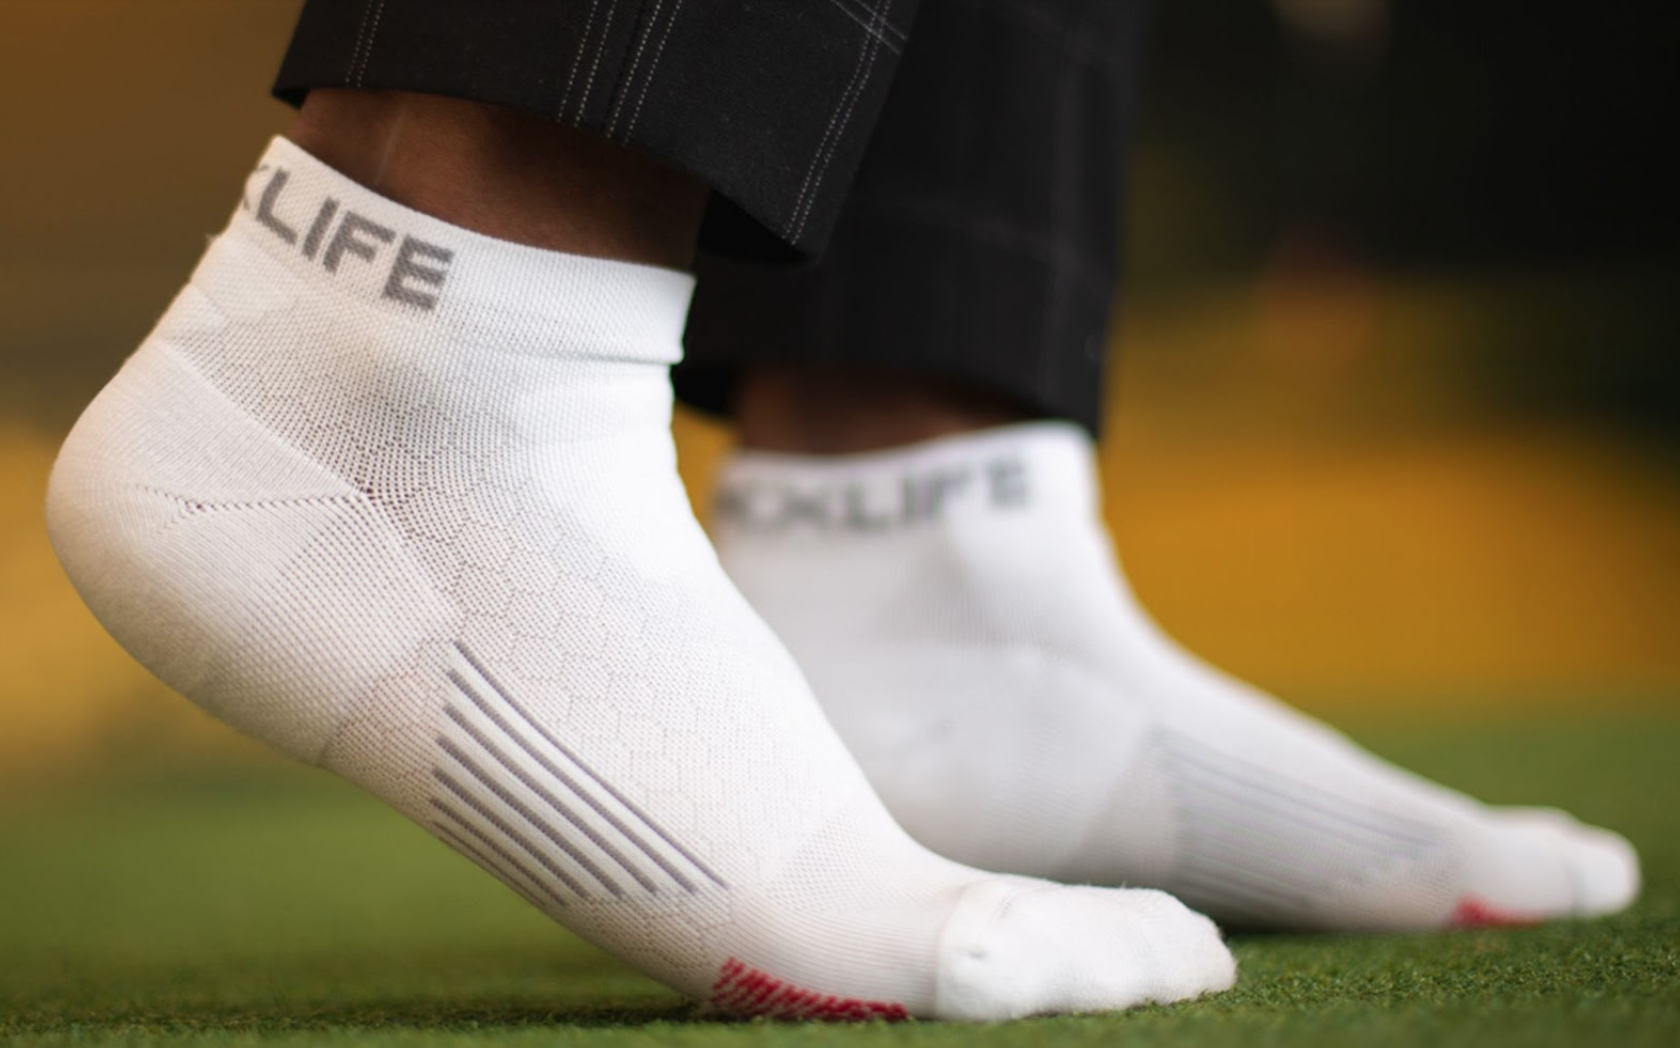 Men's Hybrid Bundle - 5 Pack of Socks – Society Socks